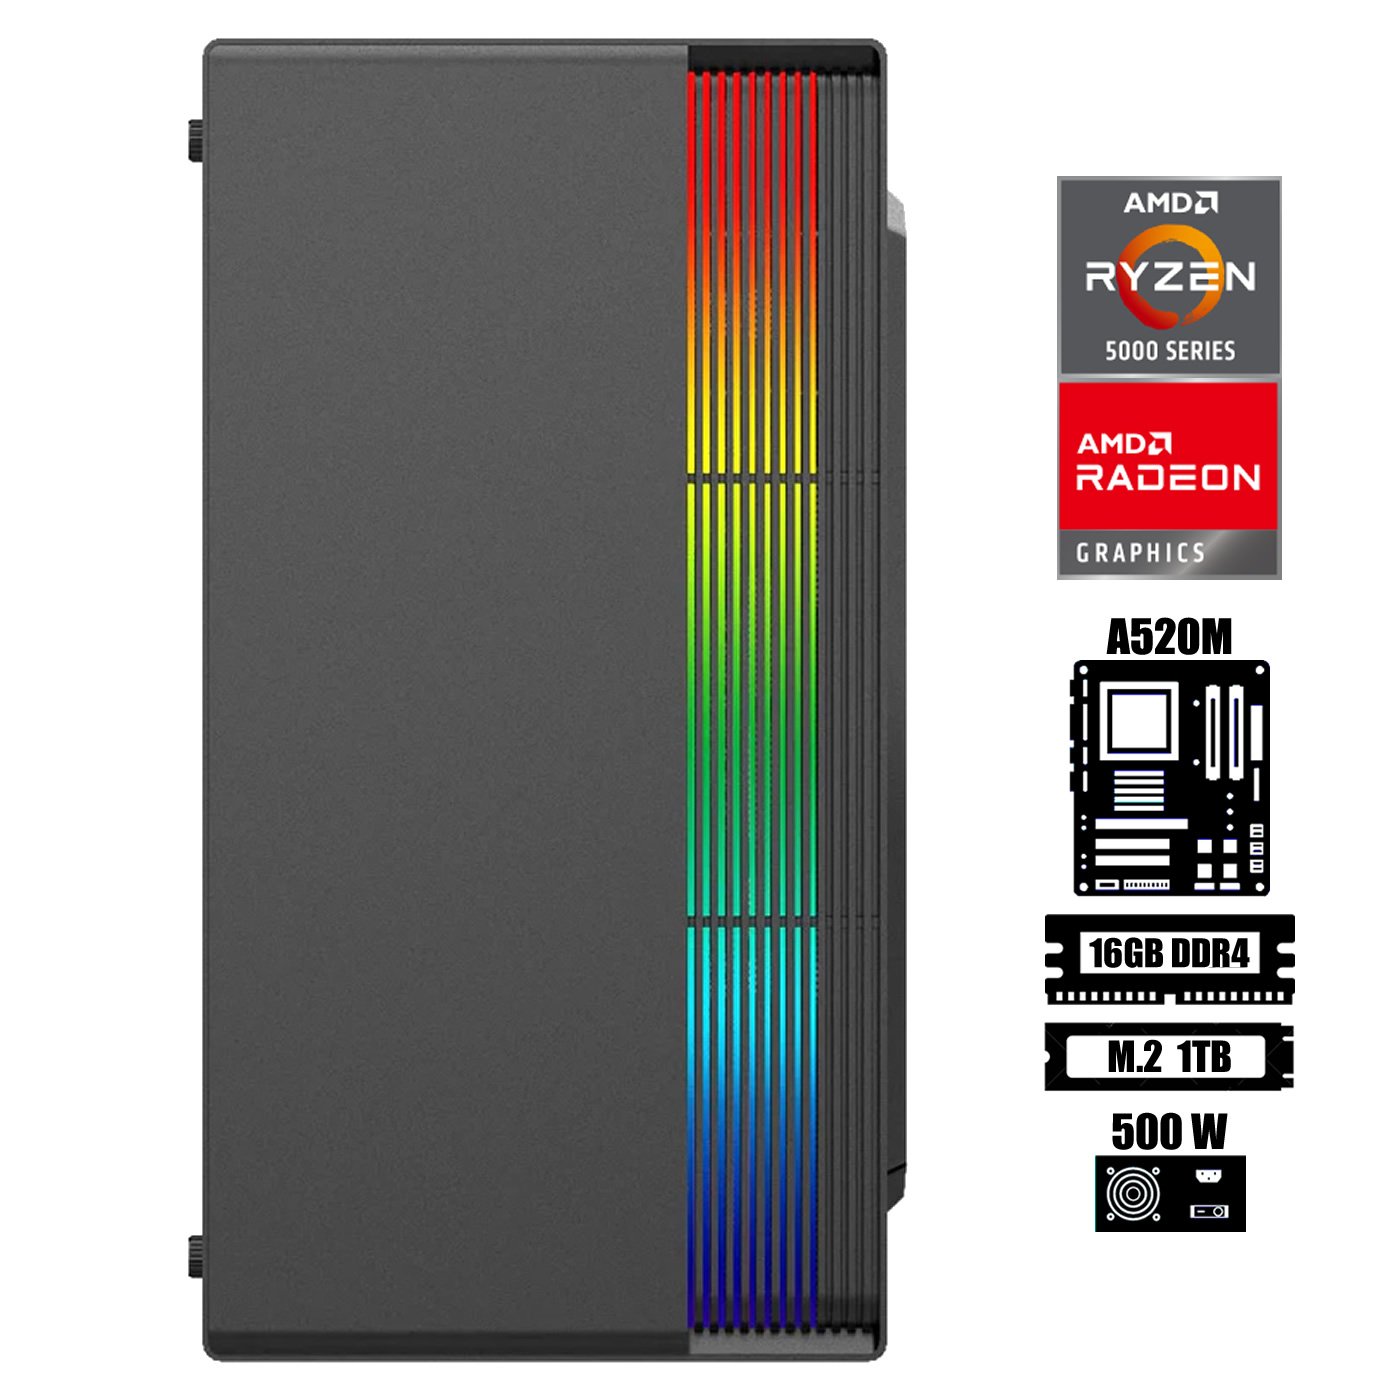 Computadora Escritorio AMD Ryzen 5 5600G + Ram 16Gb + M.2 1Tb + Gabinete  RGB USB 3.0 500W